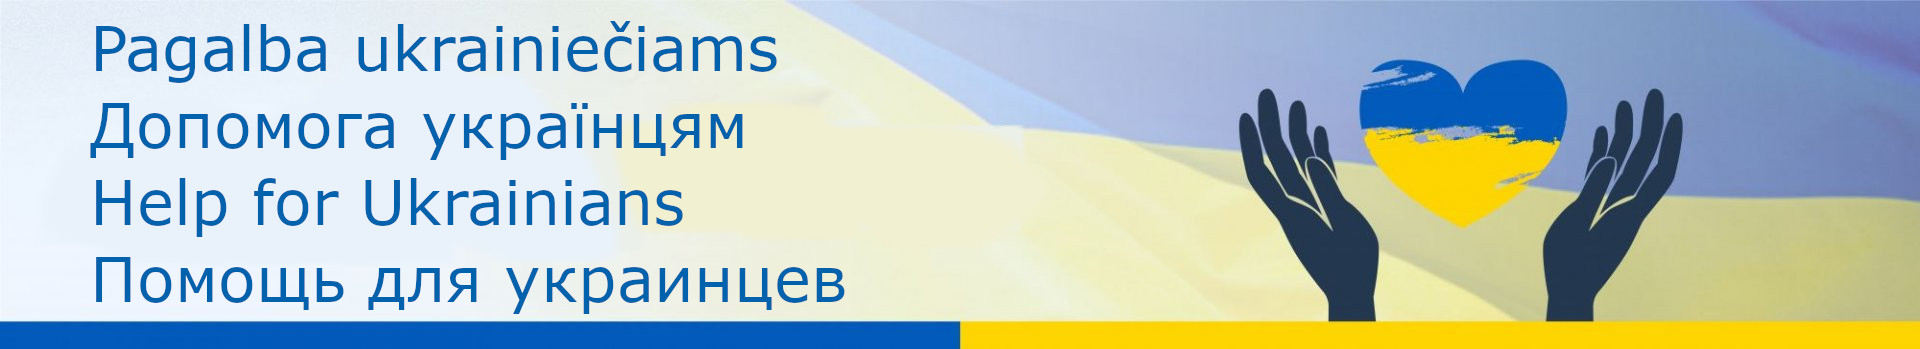 Pagalba ukrainiečiams / Help for Ukrainians